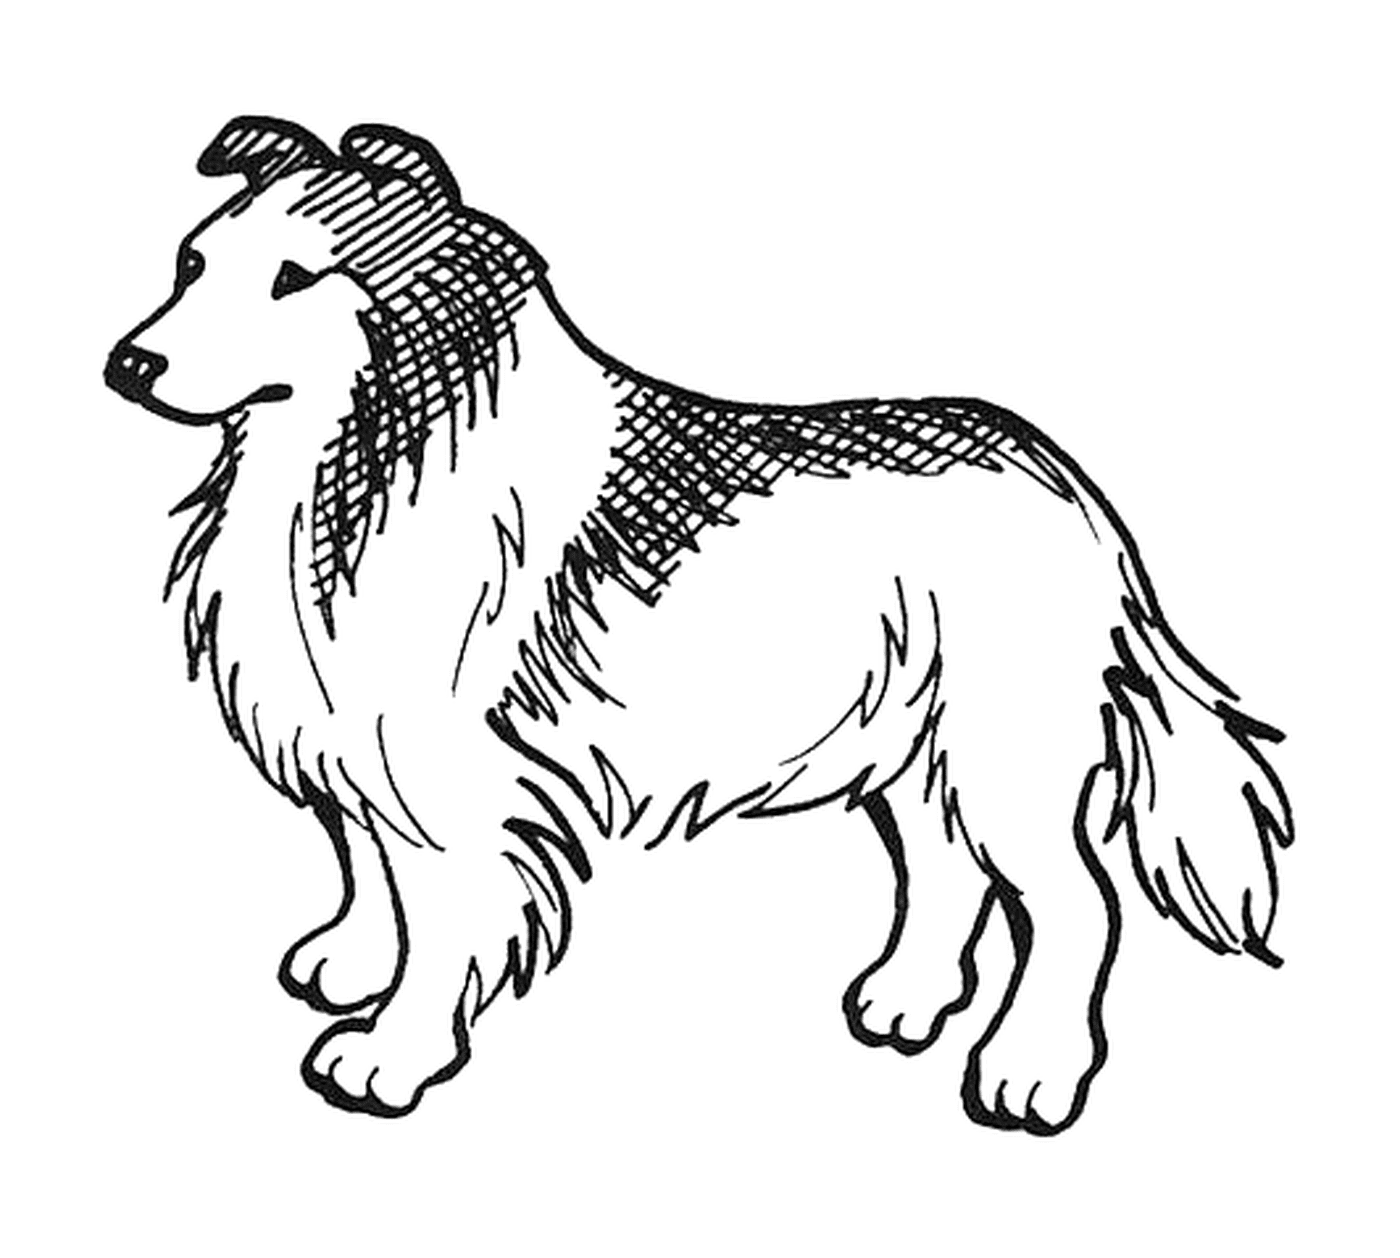   Un chien de race Lassie 